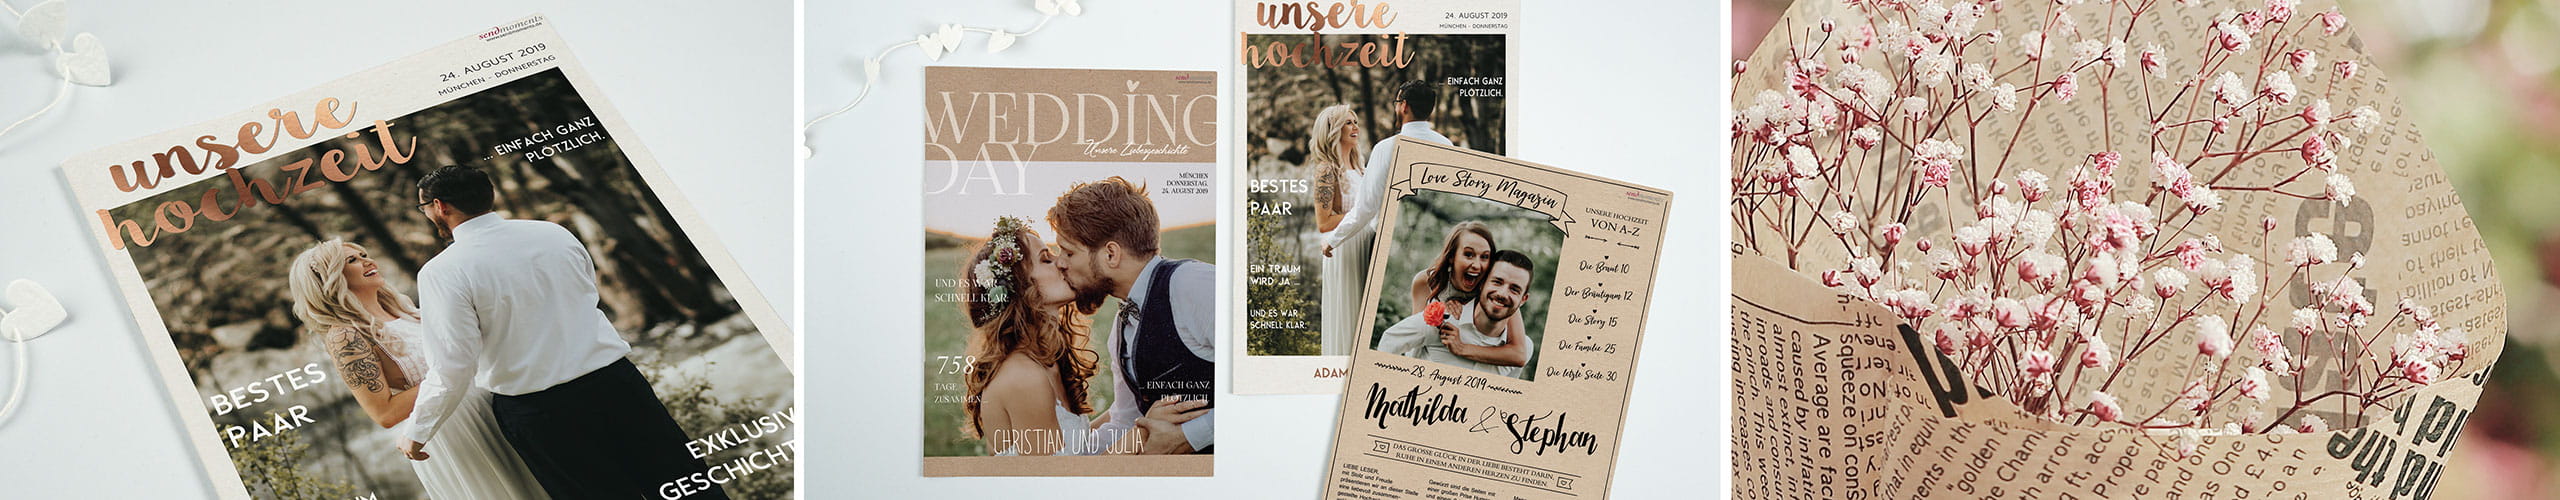 Hochzeitszeitung in verschiedenen Designs